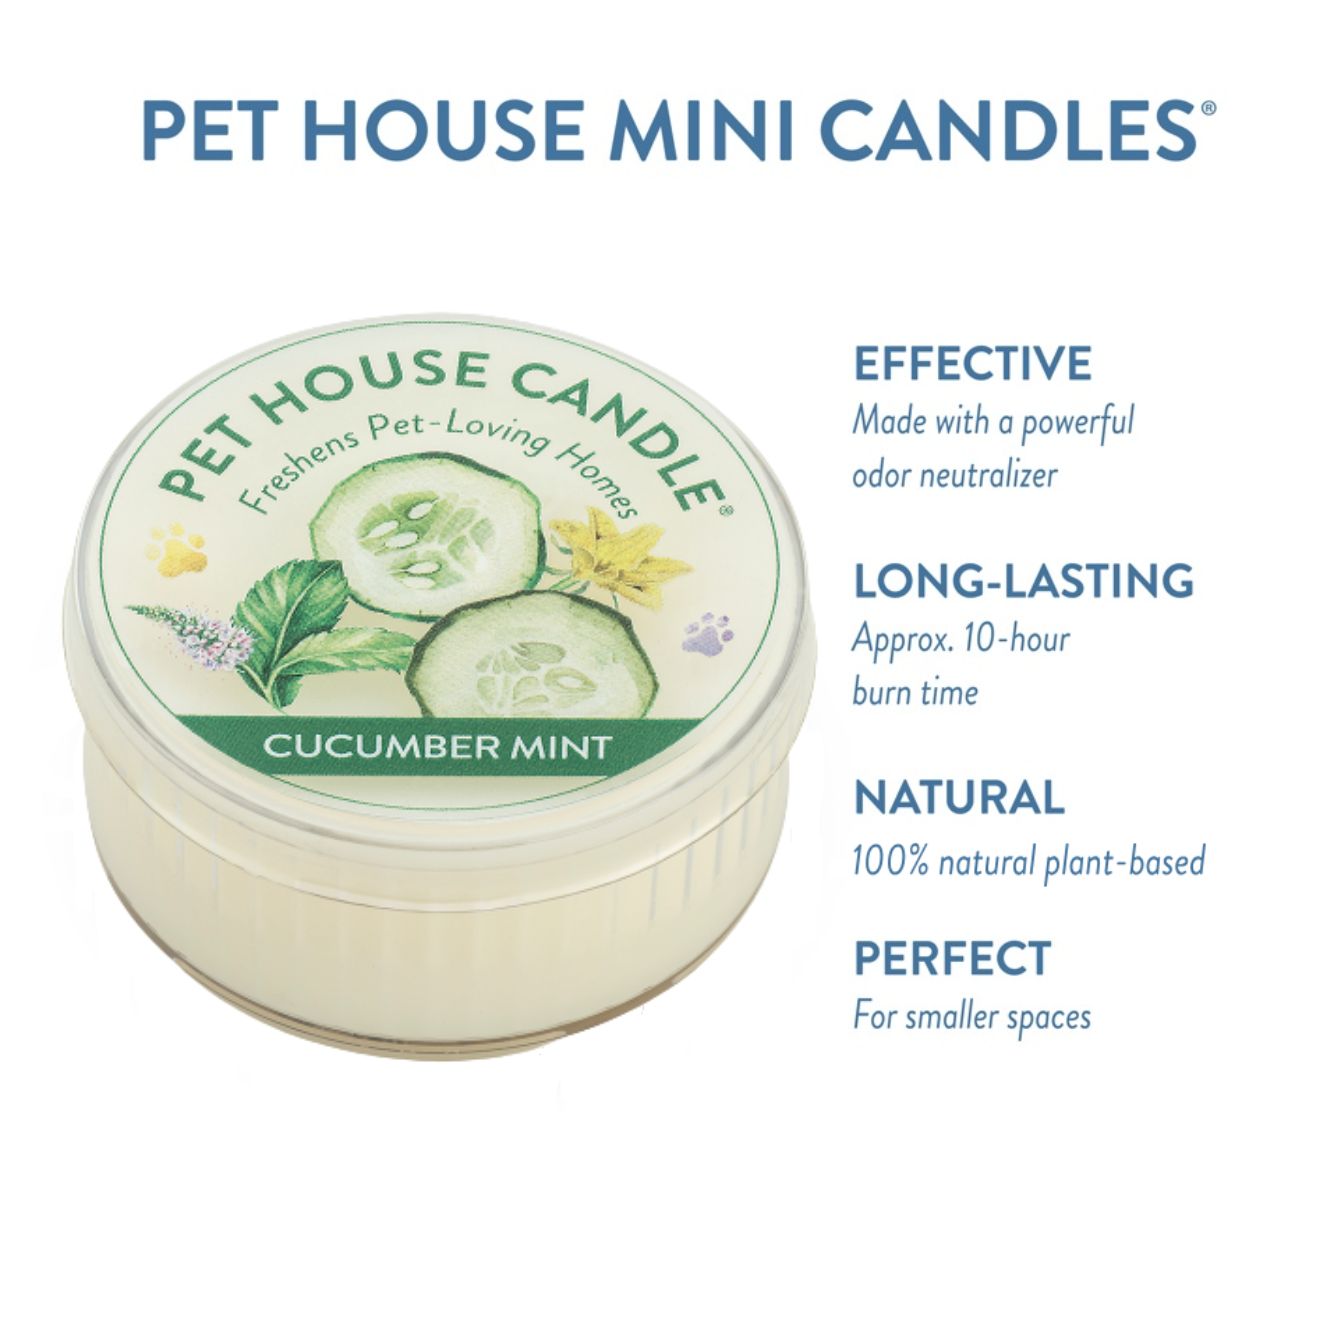 Cucumber Mint Mini Candle infographics